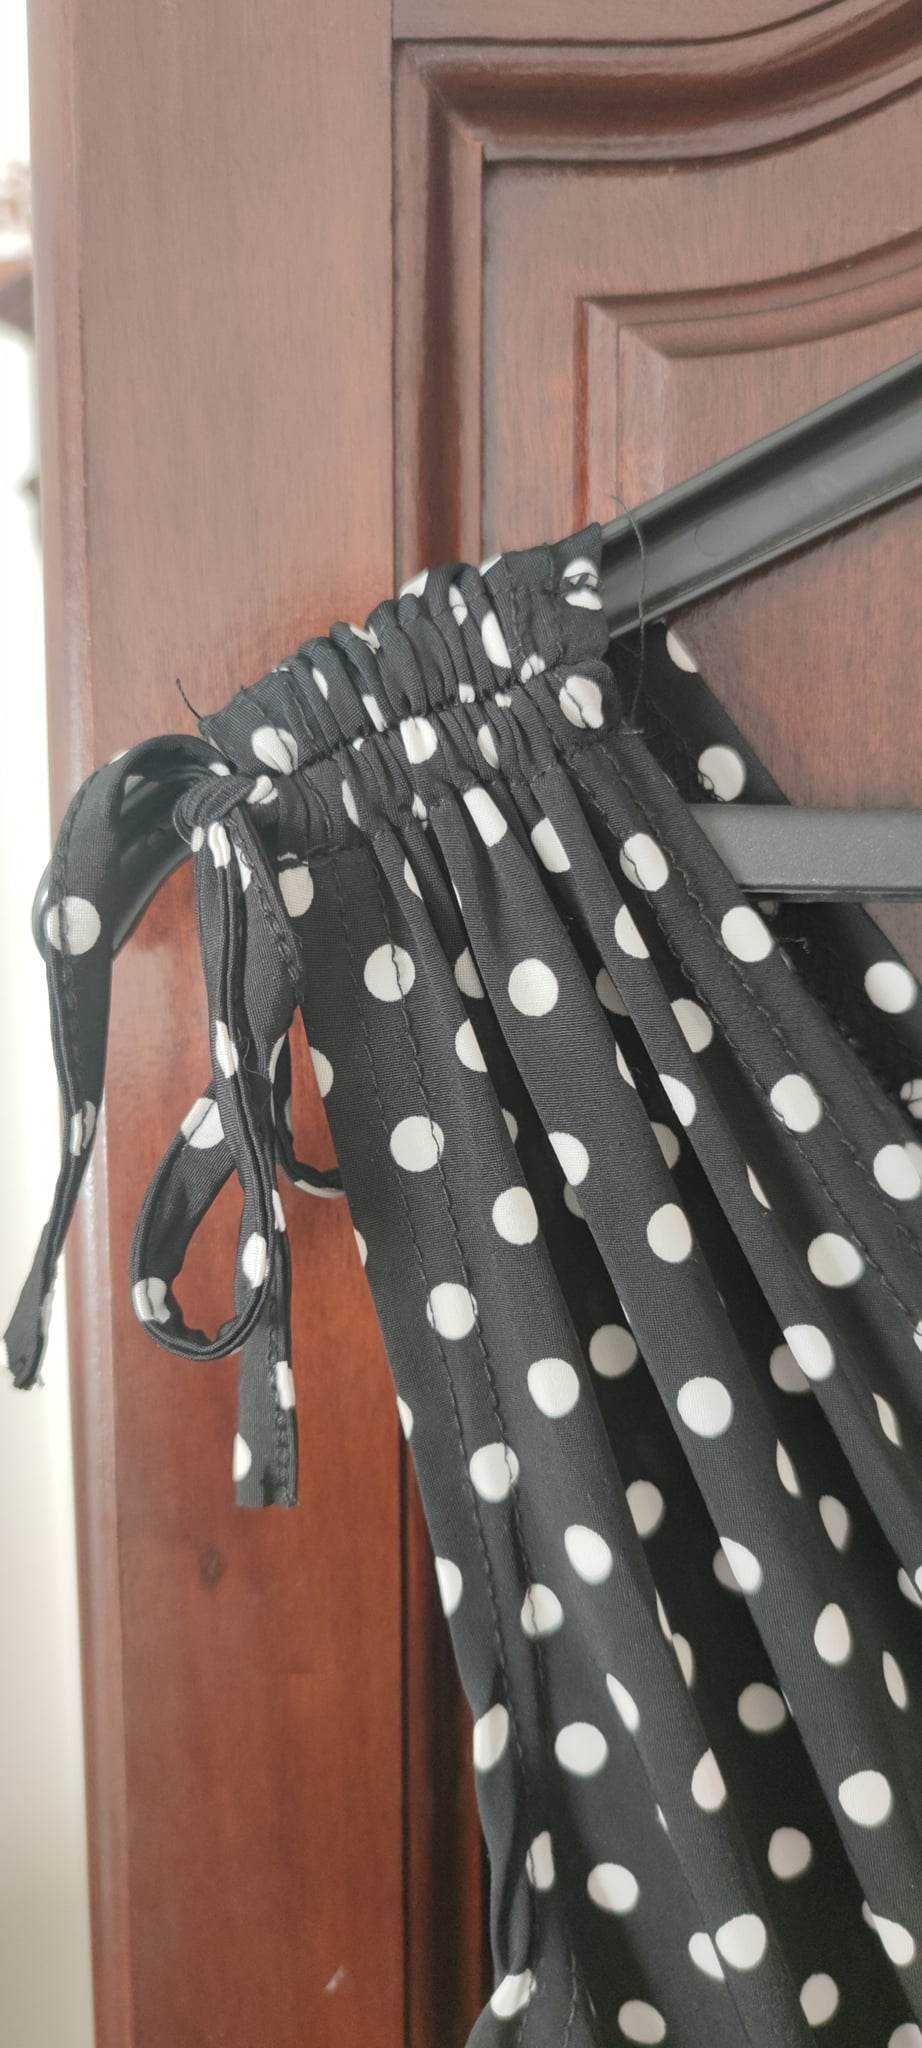 Macacão preto bolinhas (calção) bolsos tamanho único até XL (novo) 10€